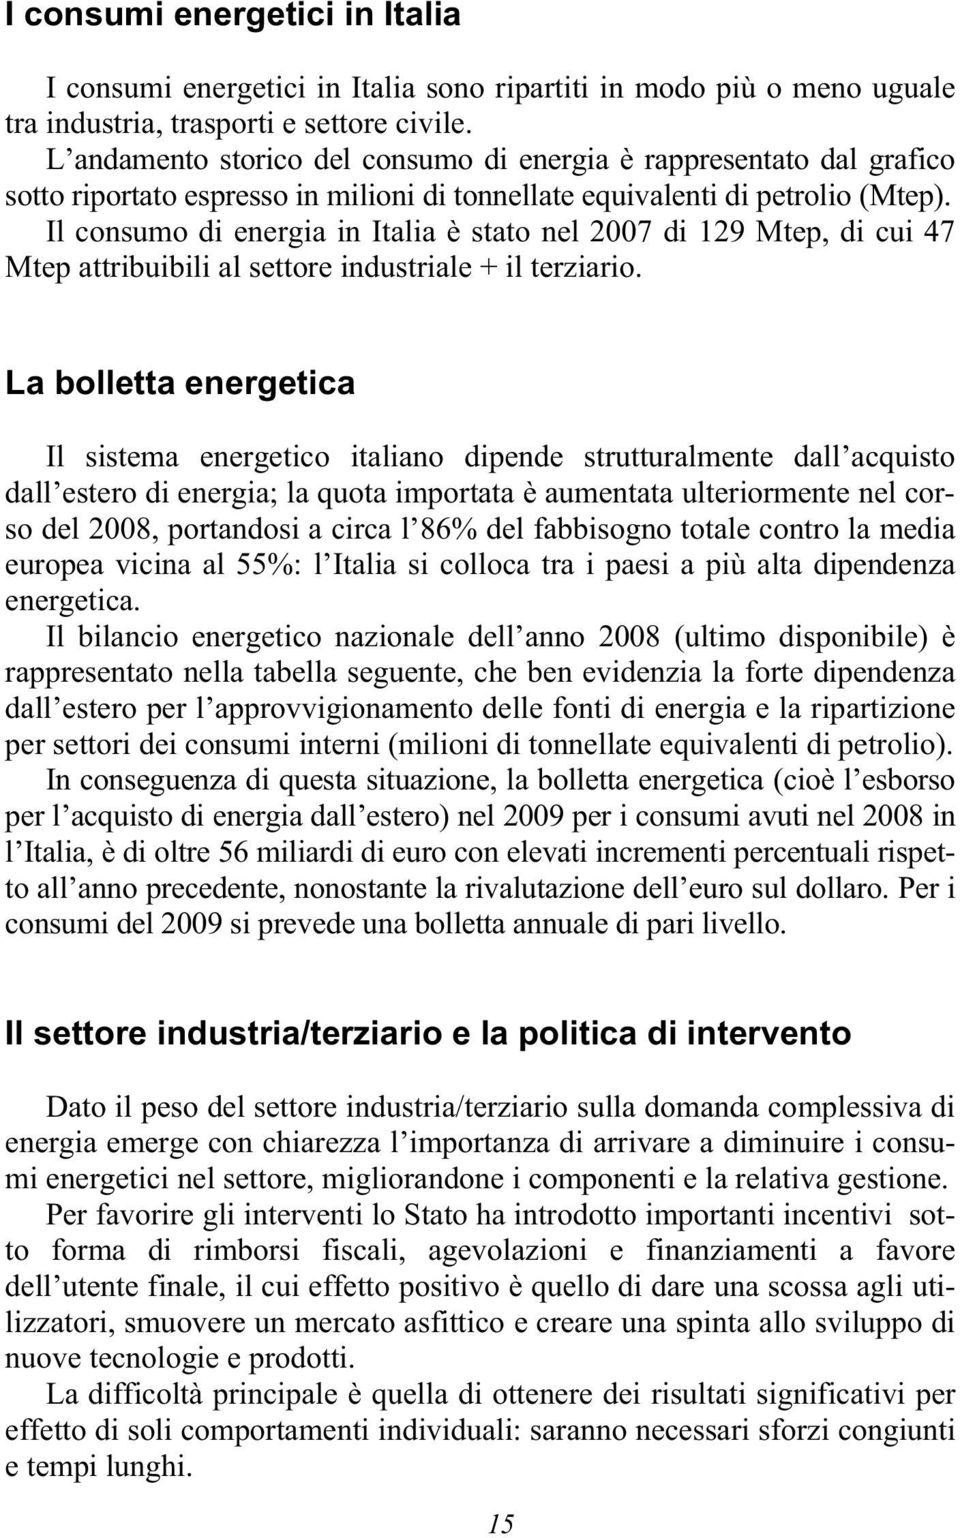 Il consumo di energia in Italia è stato nel 2007 di 129 Mtep, di cui 47 Mtep attribuibili al settore industriale + il terziario.